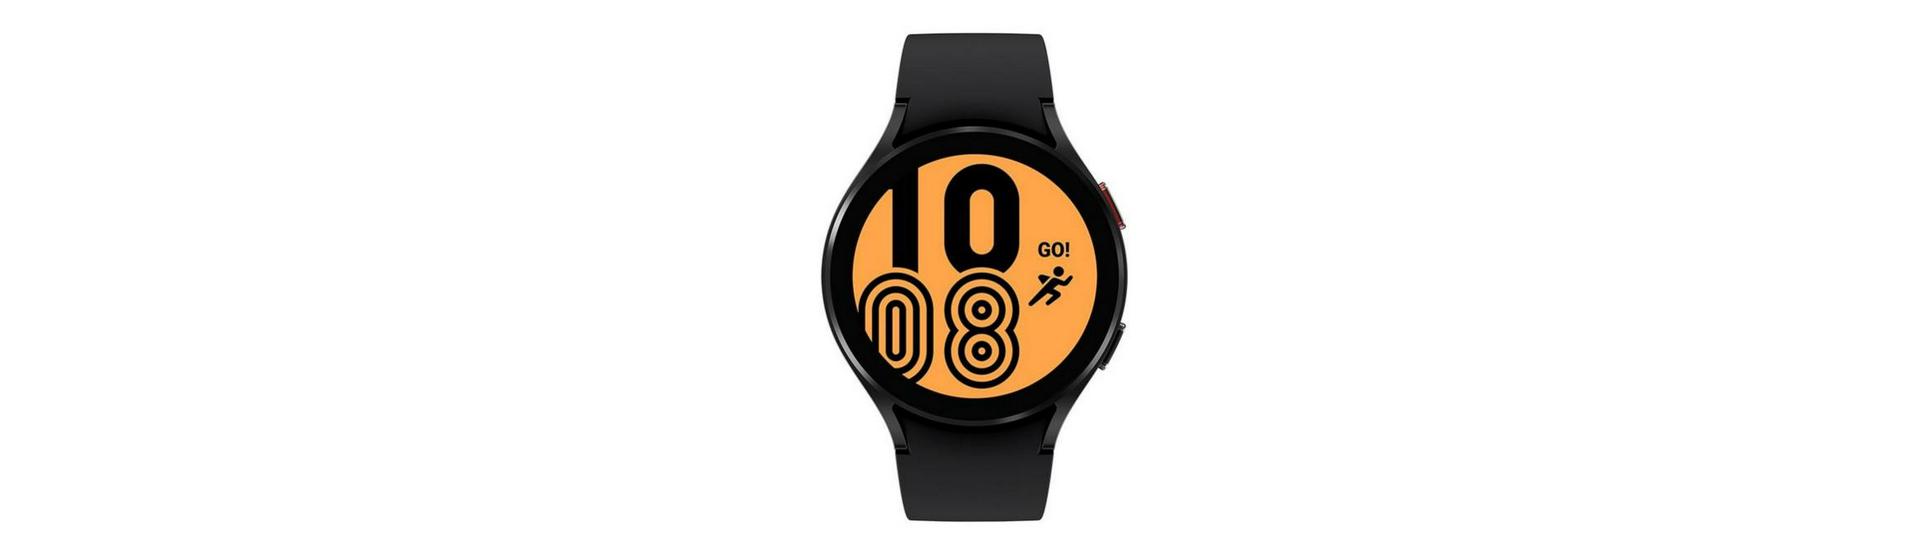 Smartwatch Y68/D20 Relógio Inteligente Android/iOs em Promoção é no Buscapé